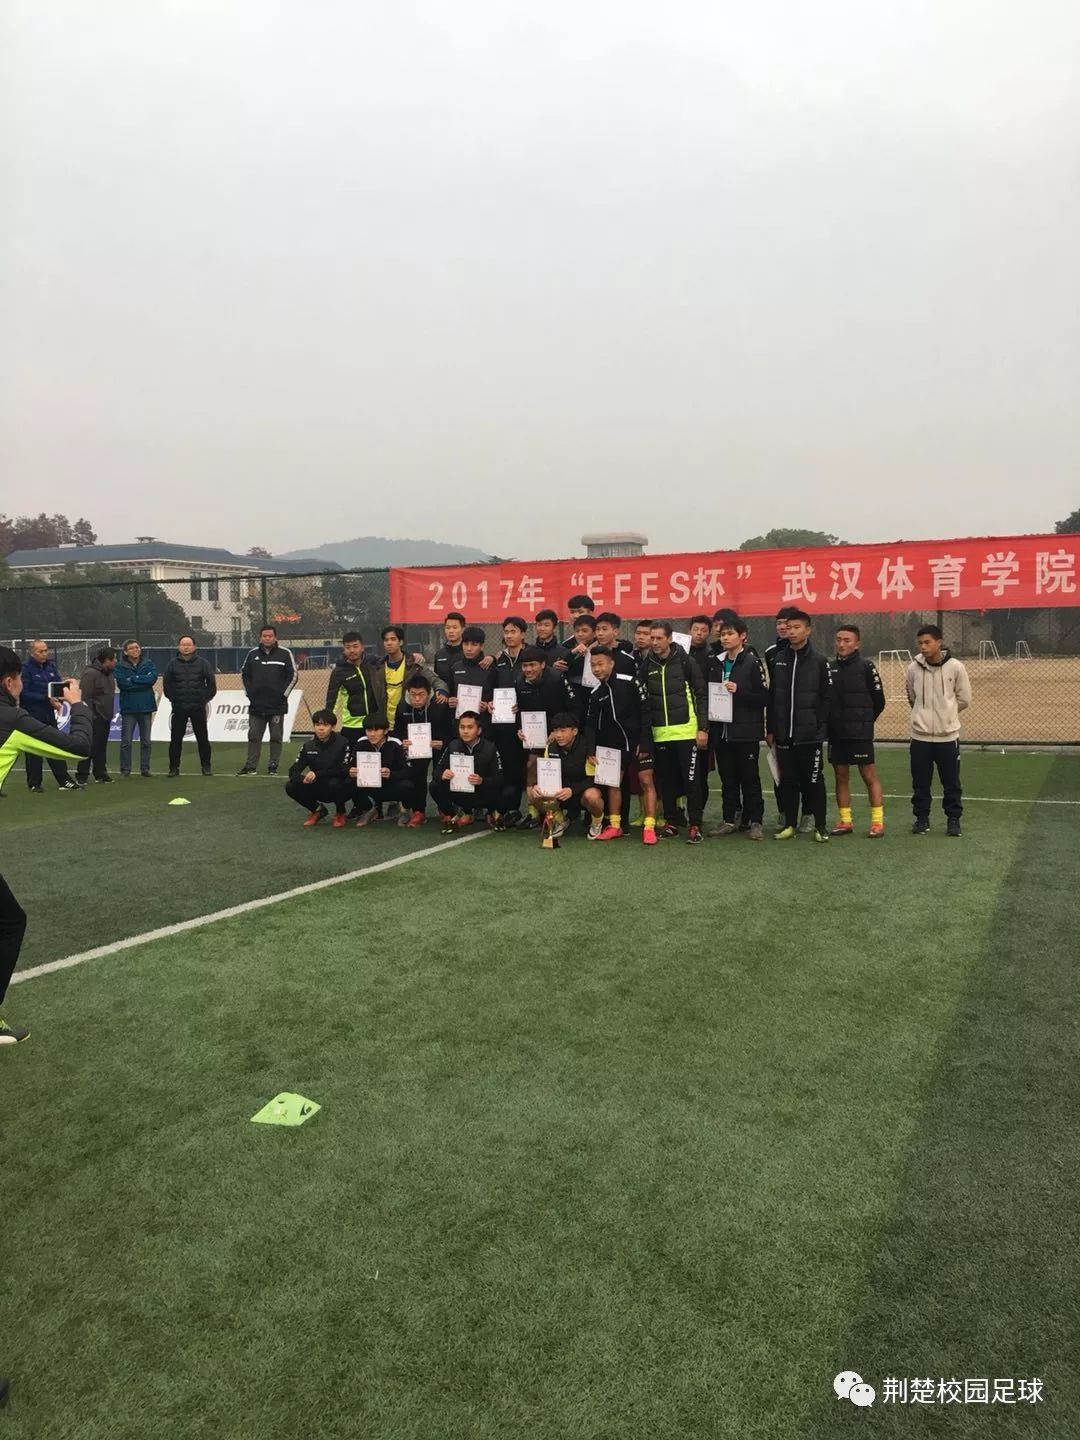 2017年efes杯武汉体育学院足球联赛圆满落幕